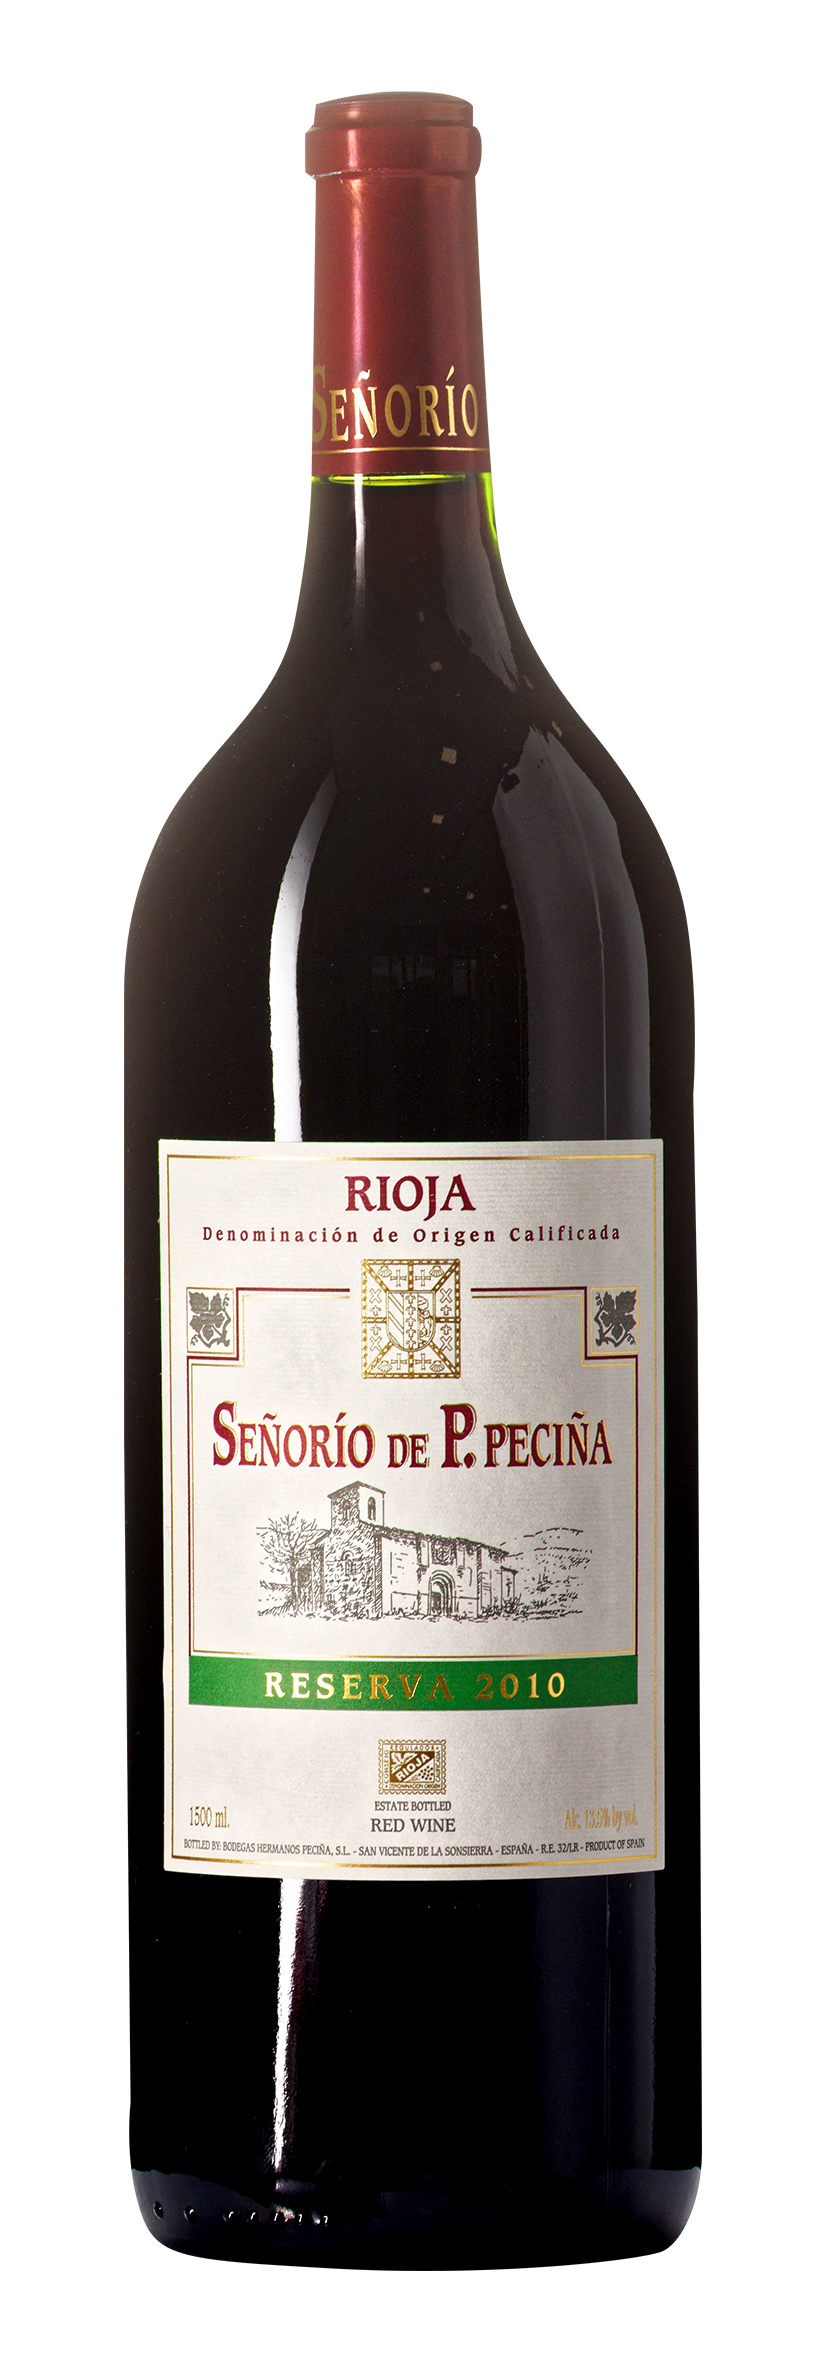 Rioja DOCa Señorío de P. Peciña Reserva 2010